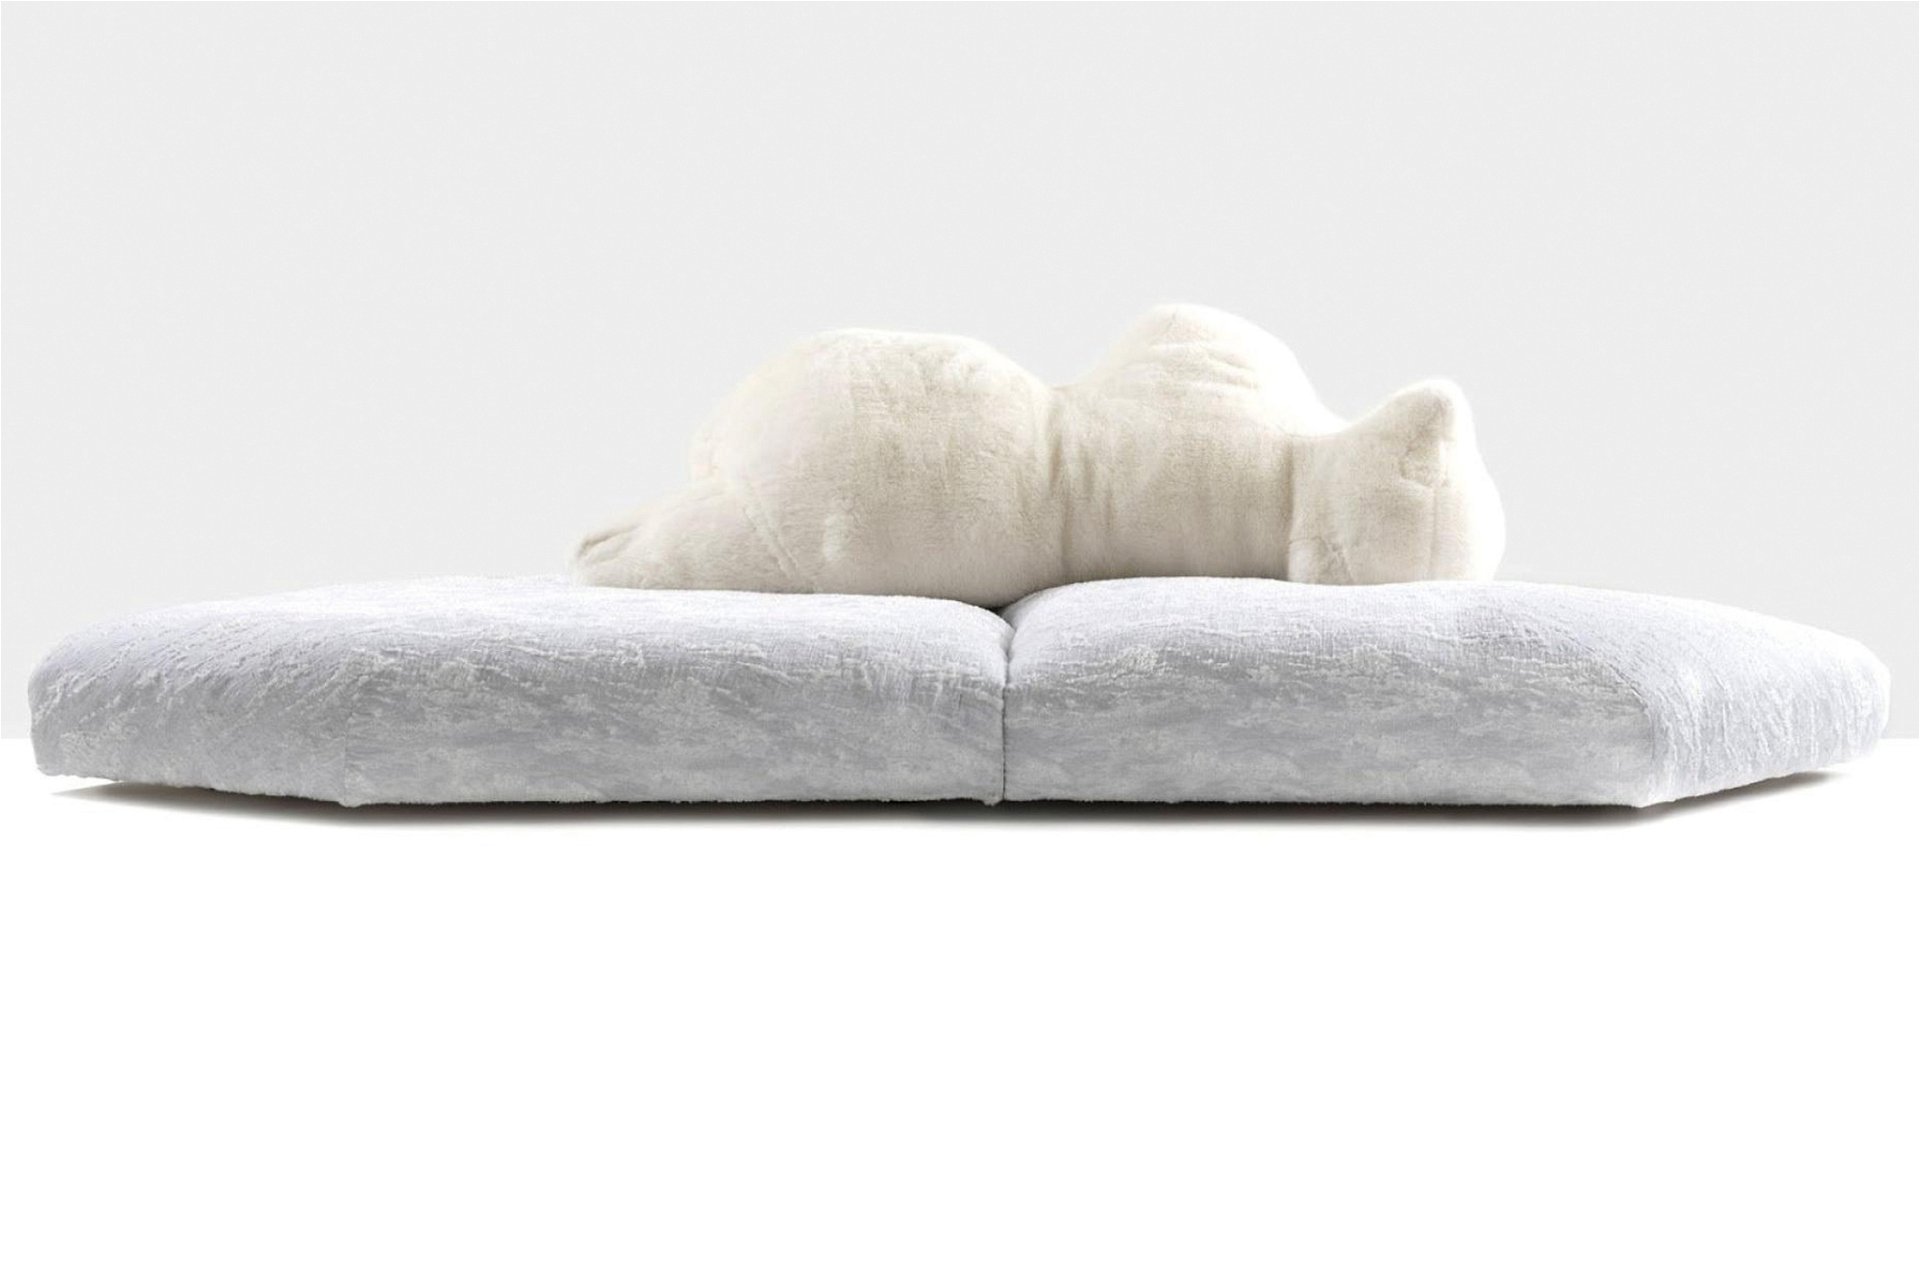 Treiben lassen Der italienische Designstar Francesco Binfaré setzte für die Nobelmarke Edra das Sofa »Pack« um. Es erinnert in Farbe und Form an eine Eisscholle, die Rückenlehne an einen Eisbären. Geht als Statement zum Klimawandel durch. edra.com